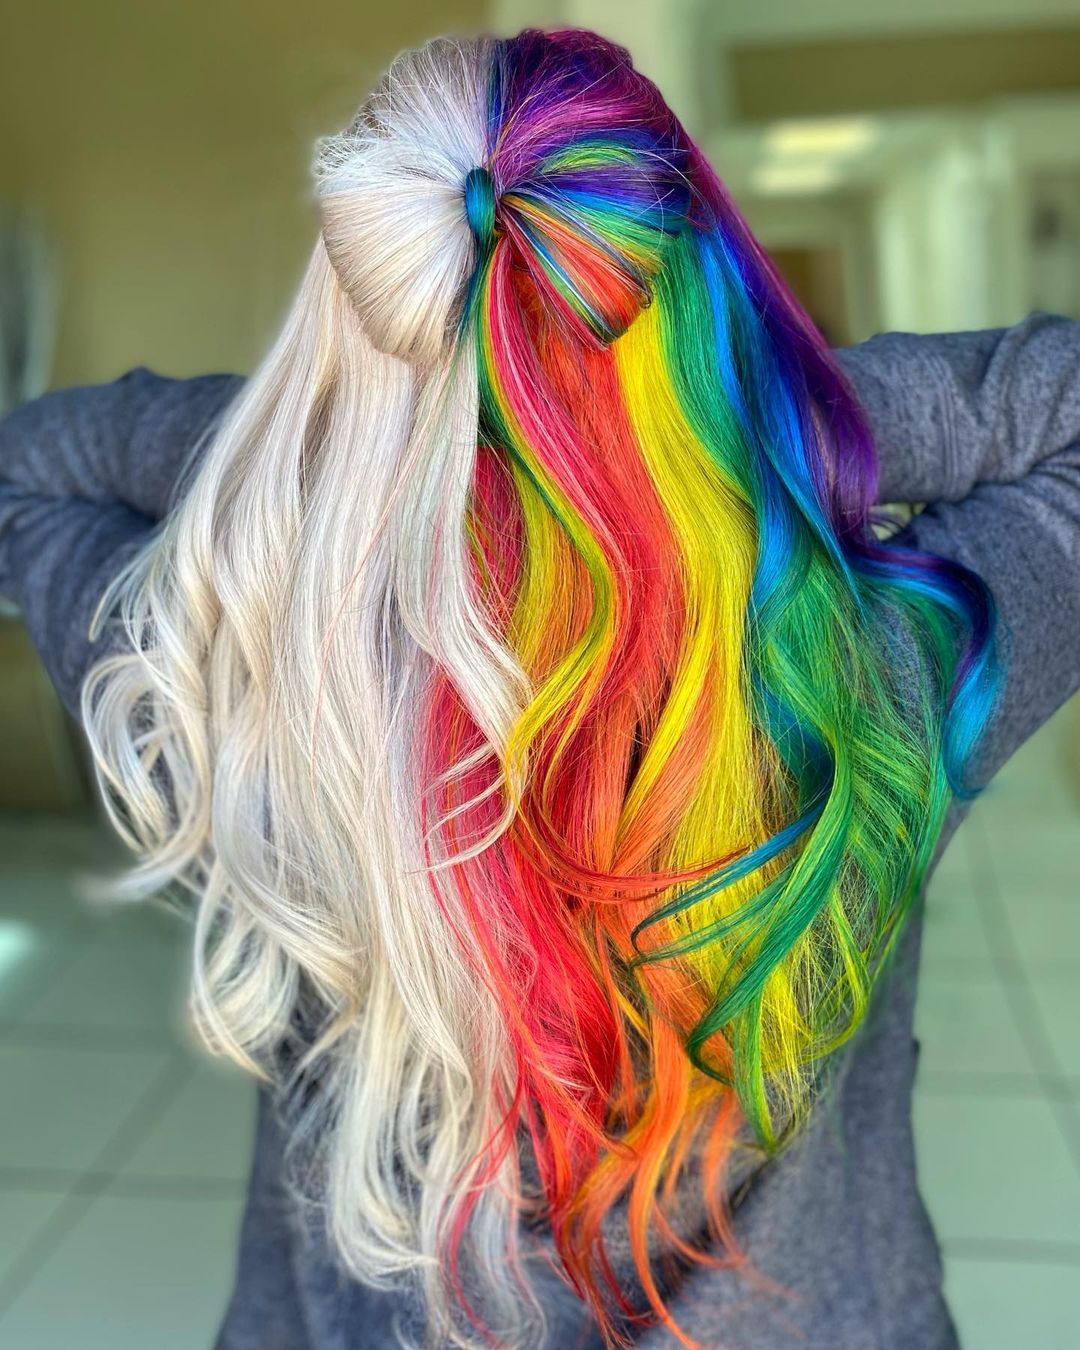 capelli-arcobaleno-con-mezzo-blu-mezzo-arcobaleno-colori